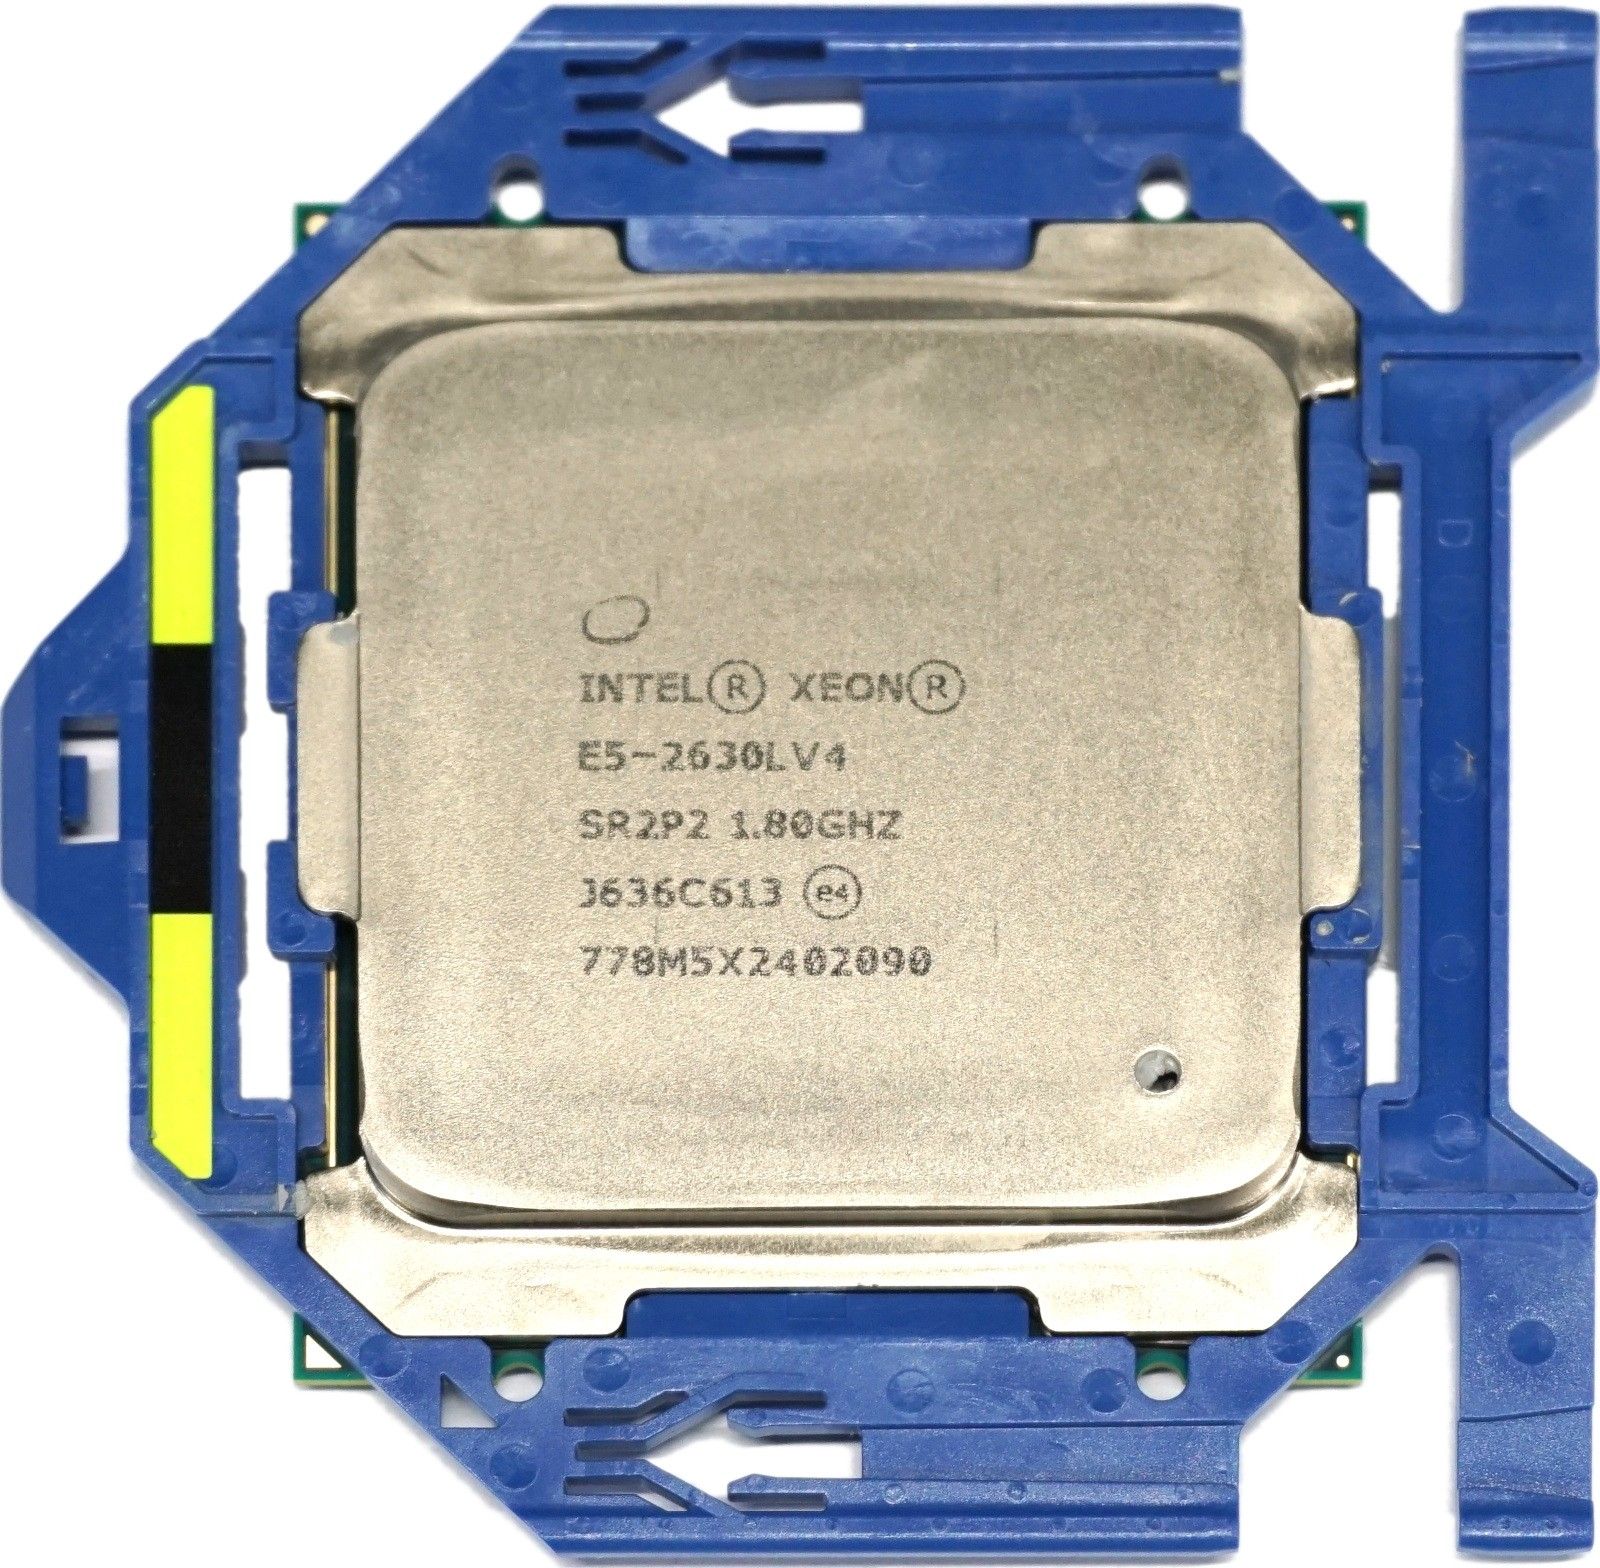 Интел е5 2650. Процессоры Intel Xeon e5. Процессор Intel Xeon e5-2650l. Intel Xeon e5 2630 2.4. Intel Xeon e5-2630 lga2011, 6 x 2300 МГЦ.